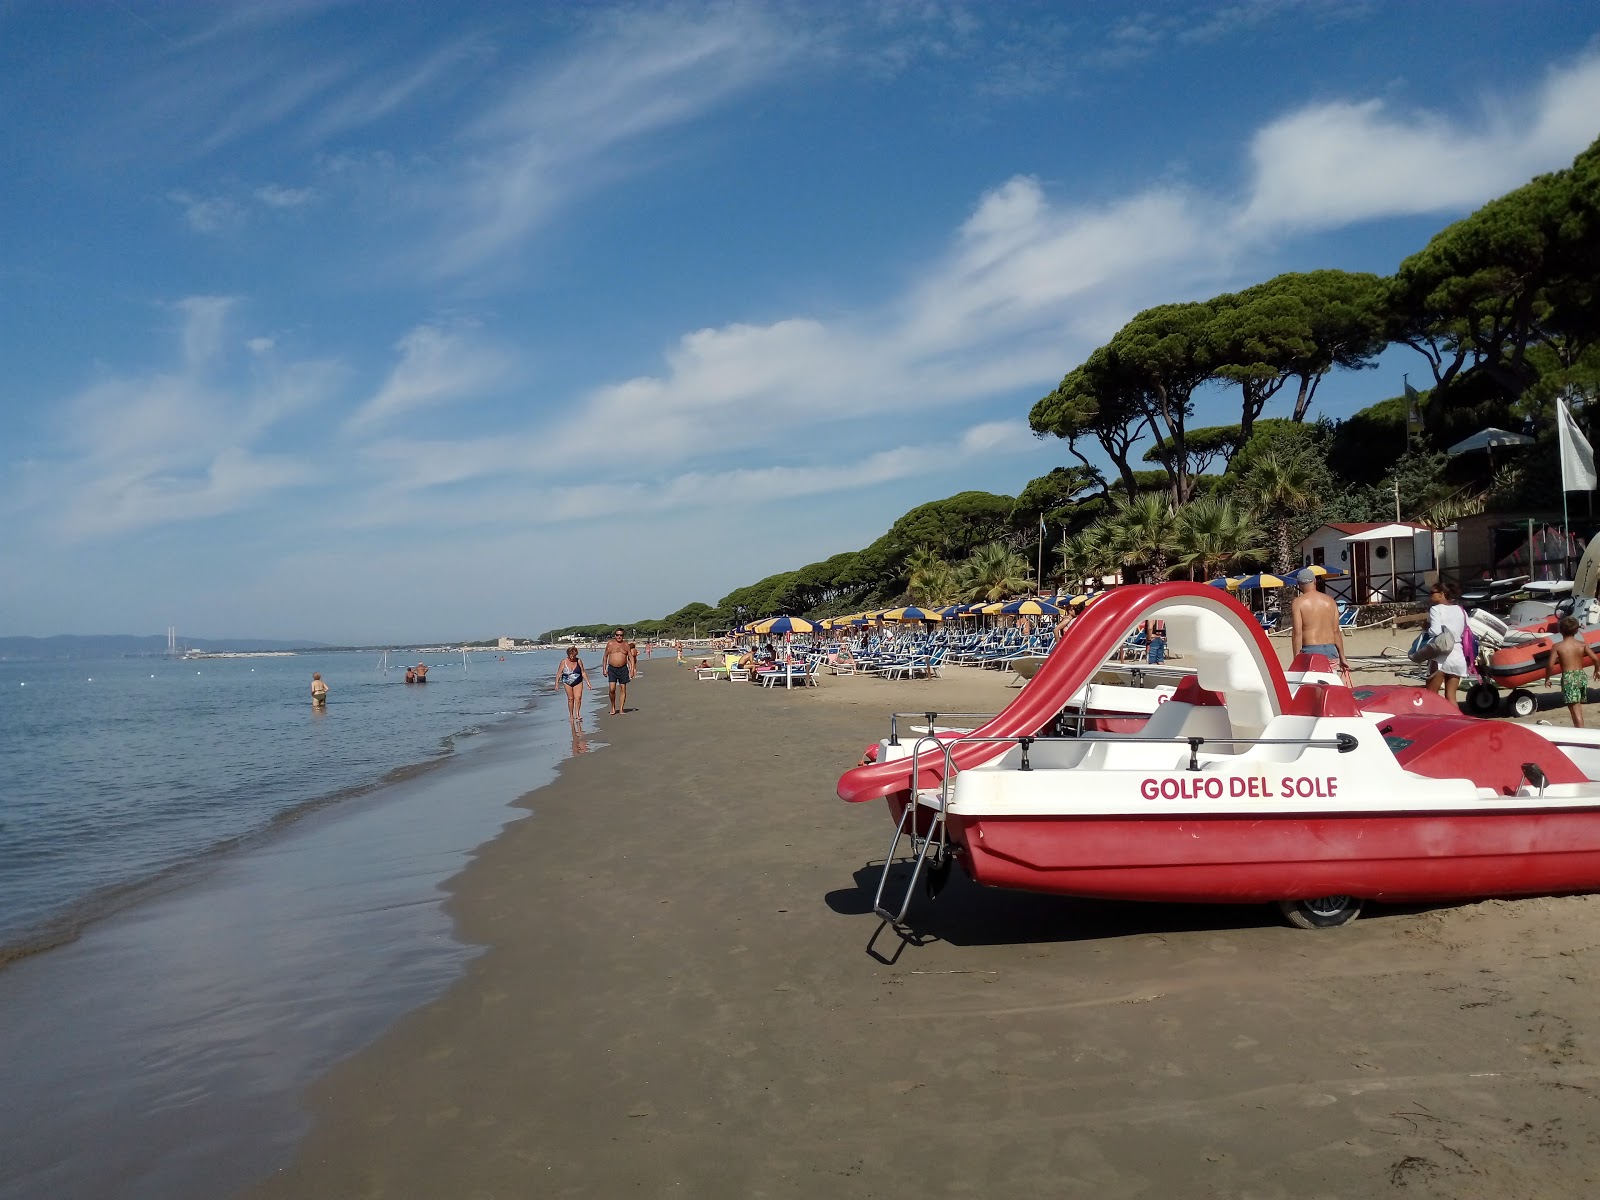 Foto van Spiaggia Golfo del Sole met recht en lang